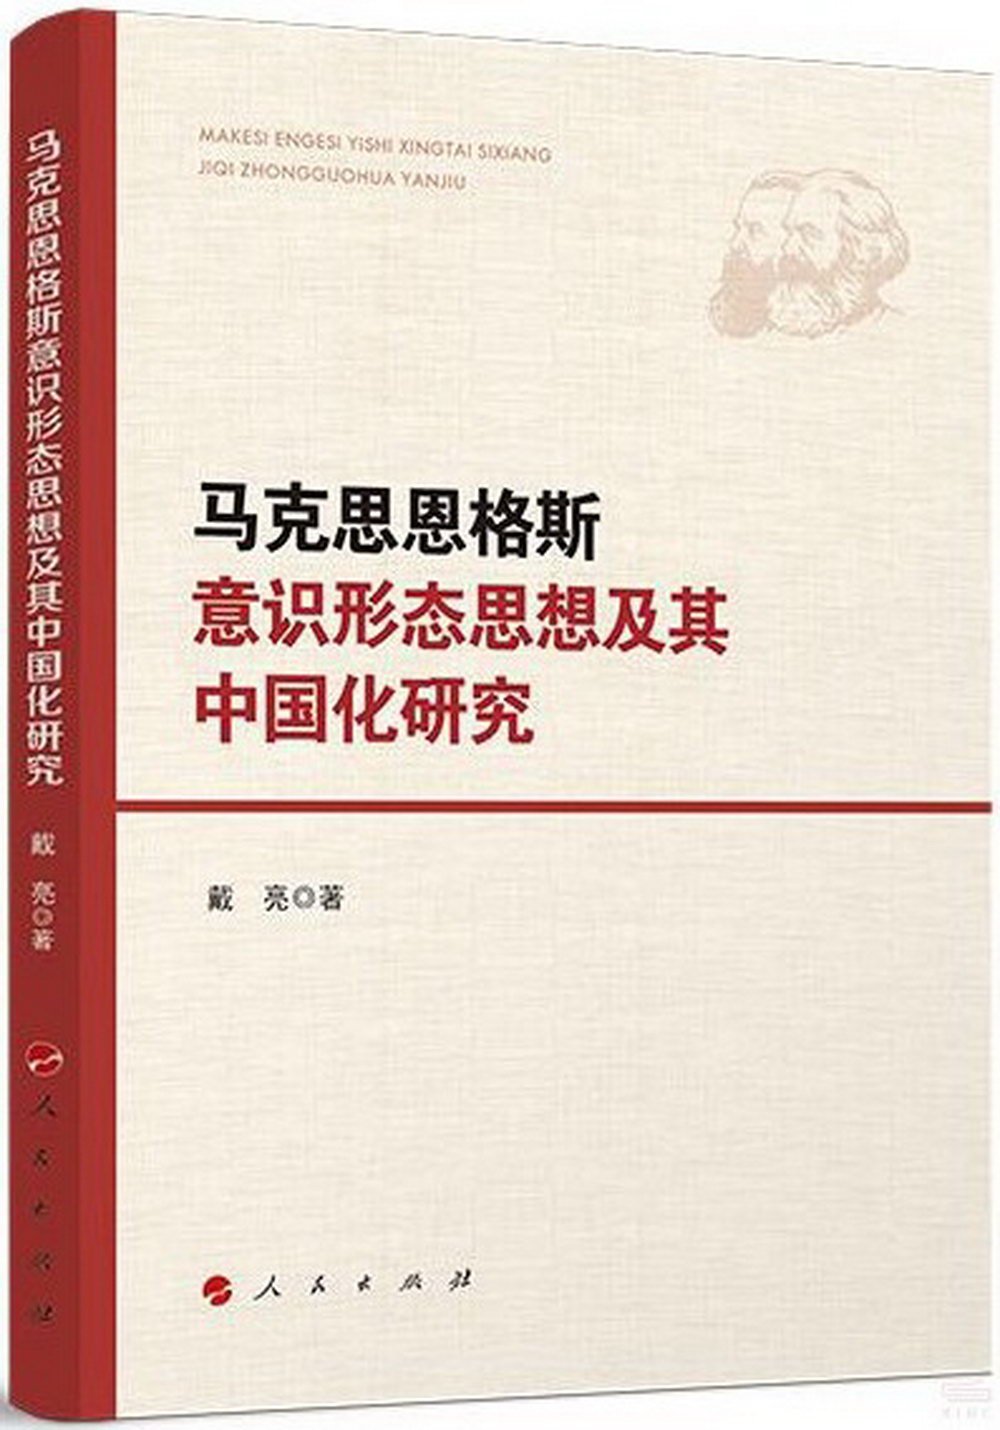 馬克思恩格斯意識形態思想及其中國化研究